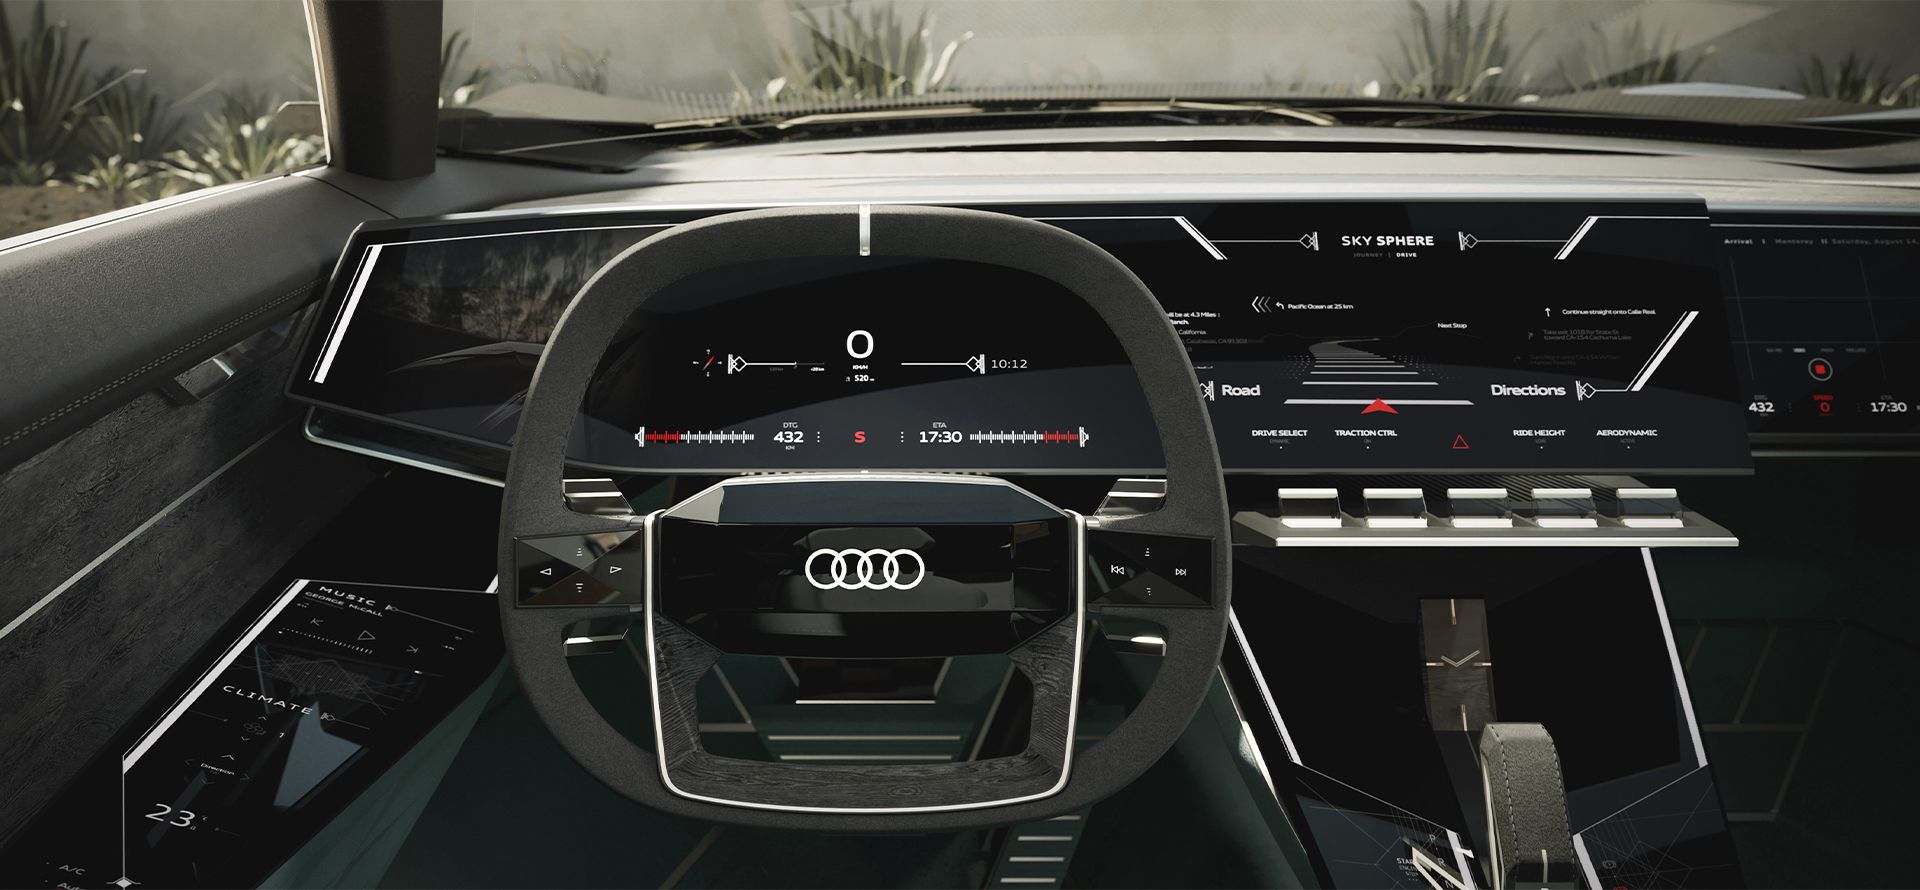 Poste de conduite de l'Audi skysphere.